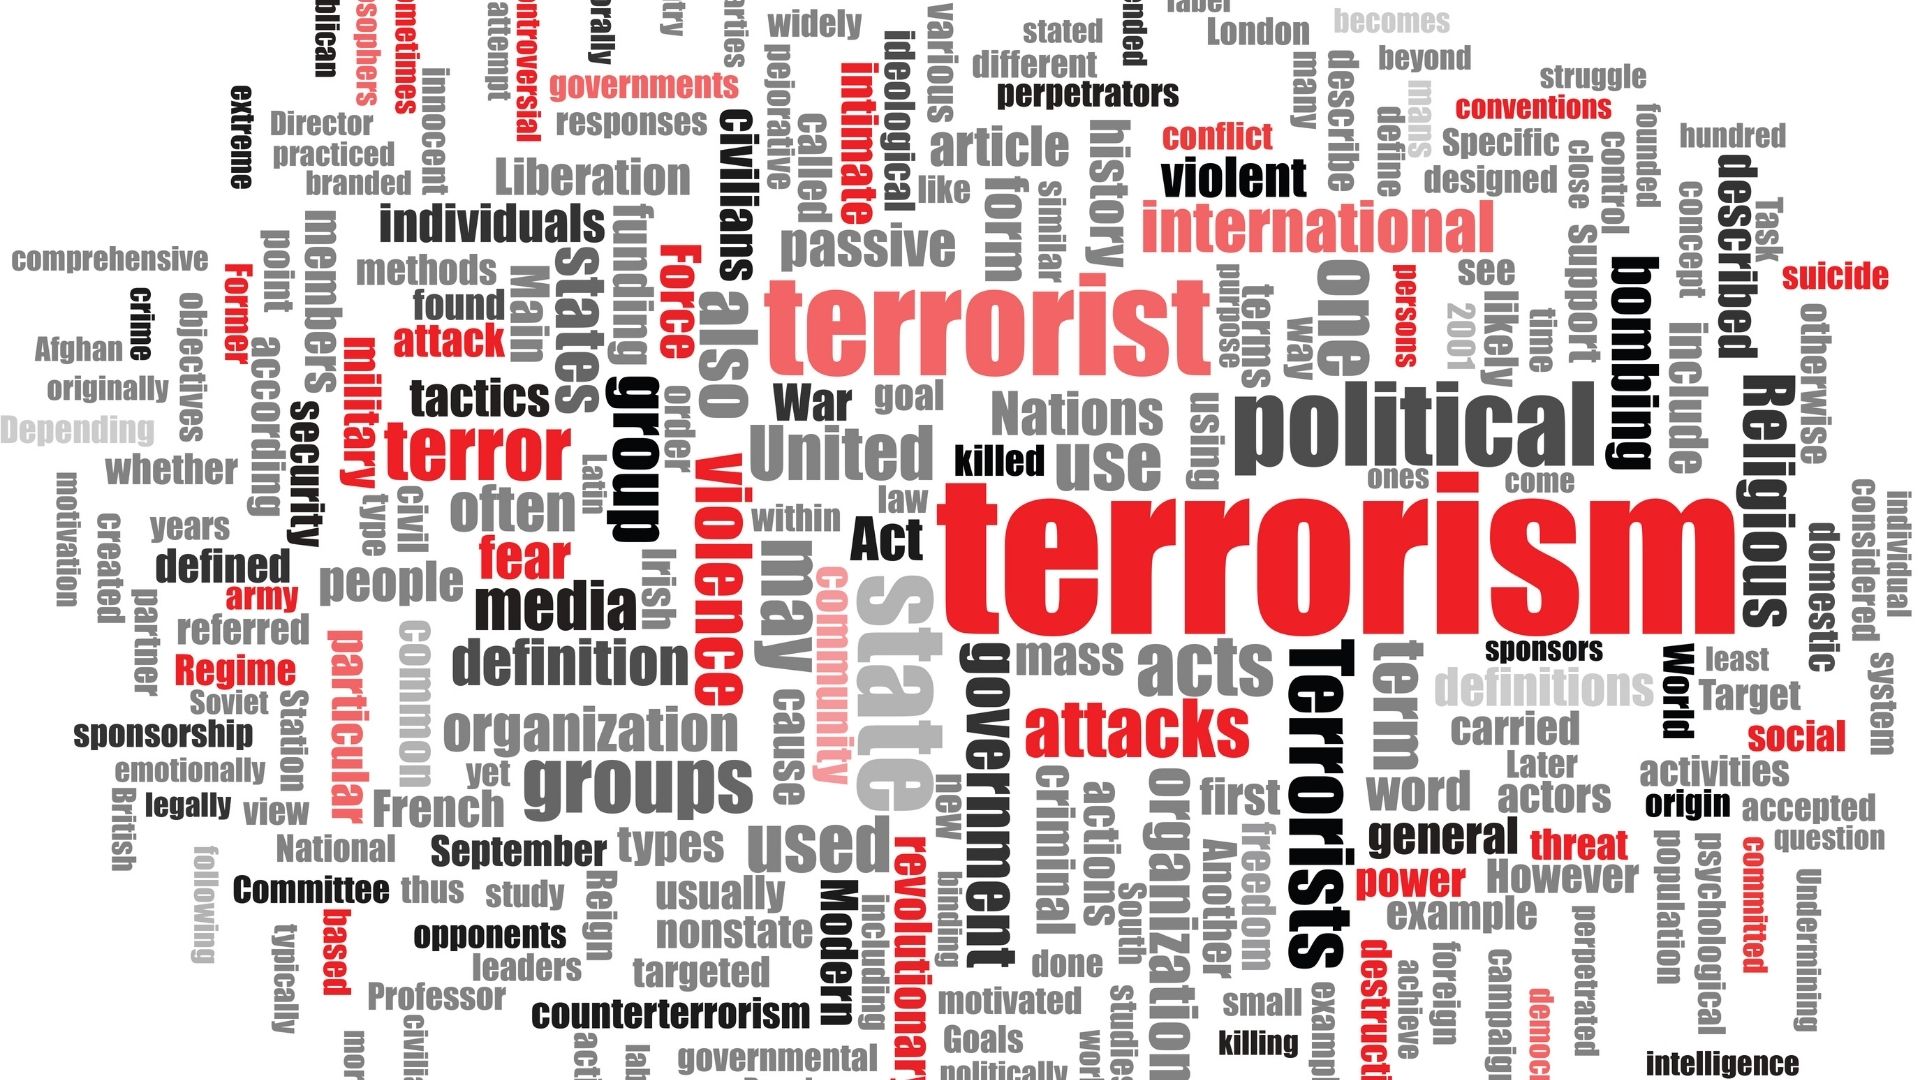 Le terrorisme en 2021 : évaluation à l’aide de deux sources complémentaires